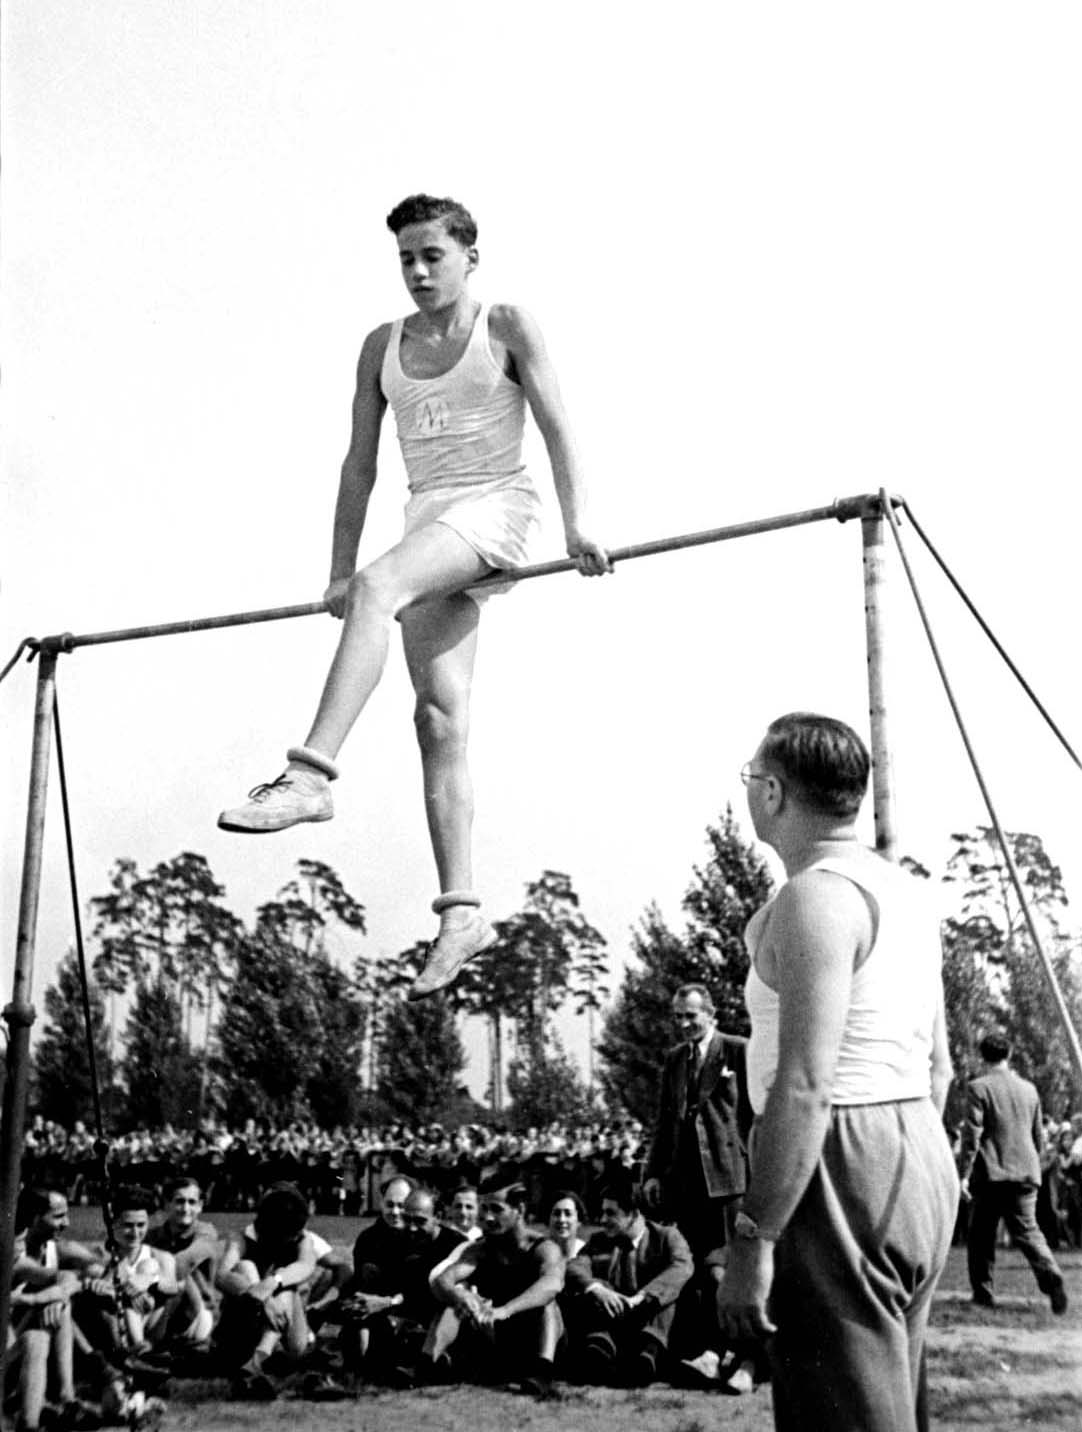 Berlín, Alemania, 1935. Competición gimnástica en un evento deportivo para colegios judíos